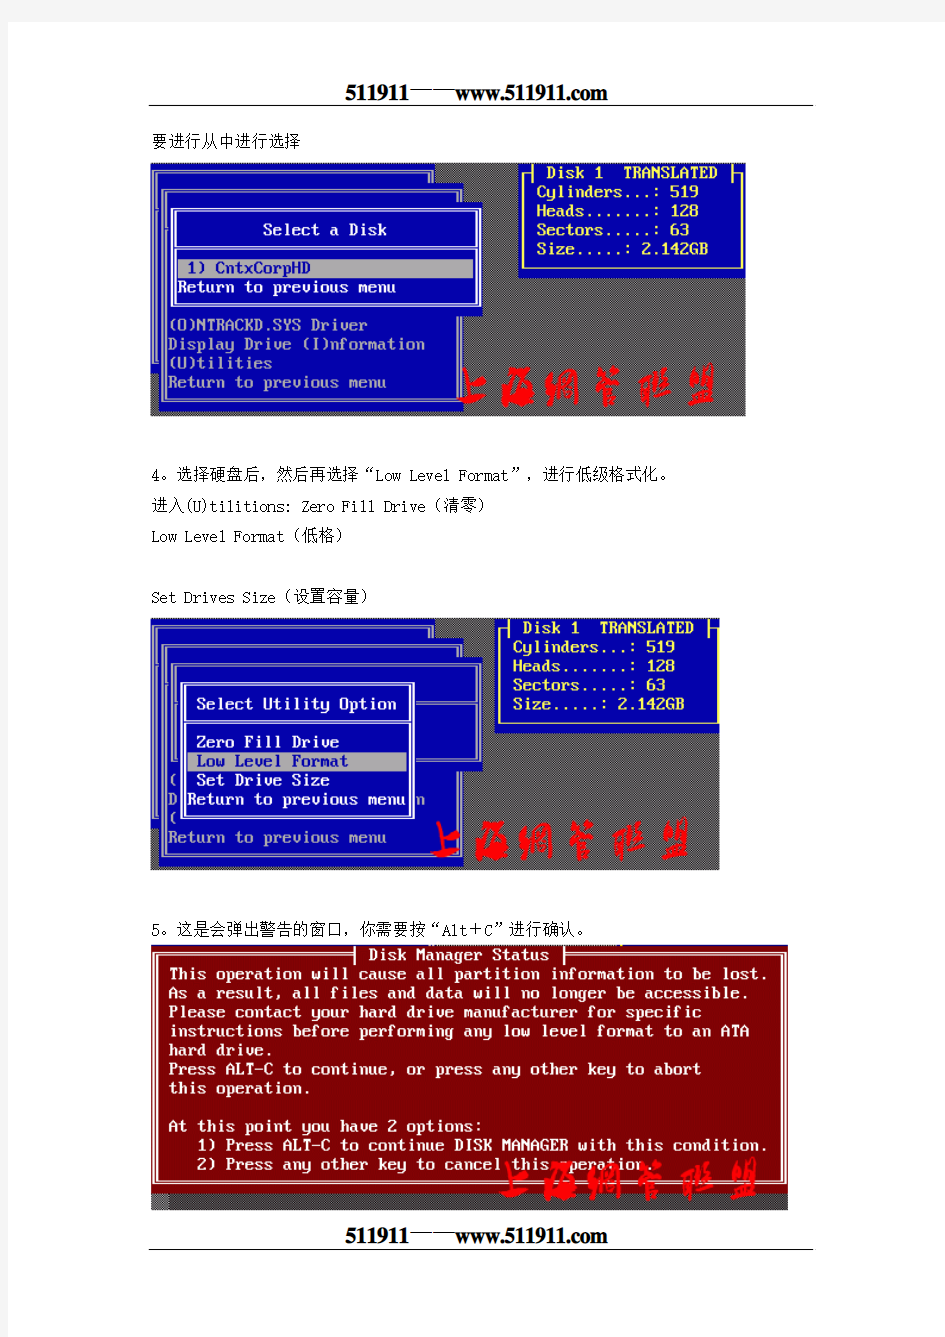 硬盘低格软件—DM—图解教程